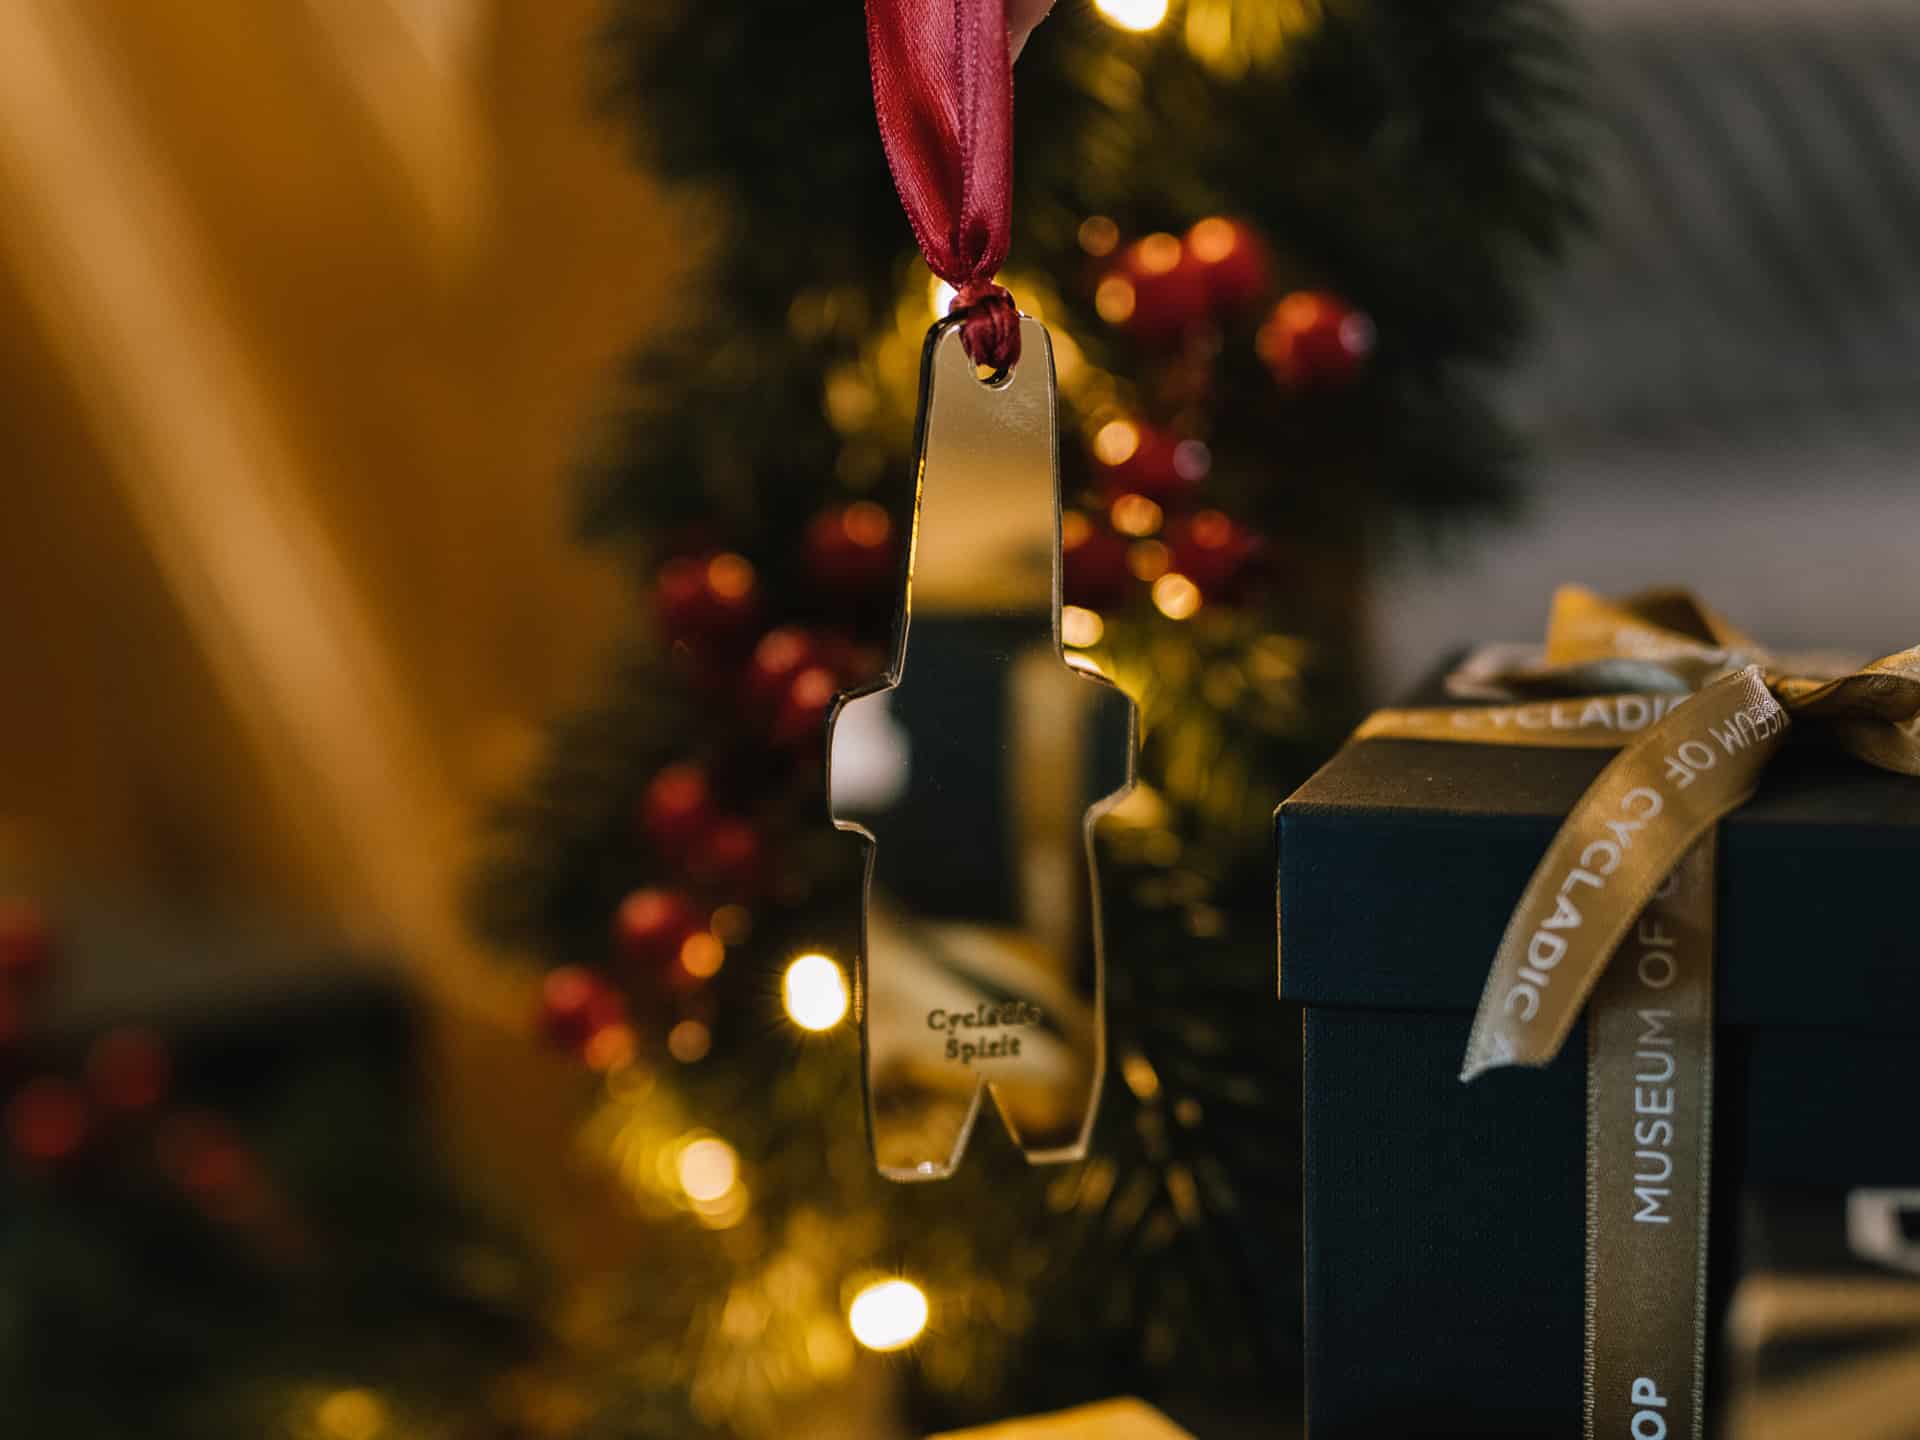 χριστουγεννιάτικο χρυσό στολίδι σε μορφή ειδωλίου